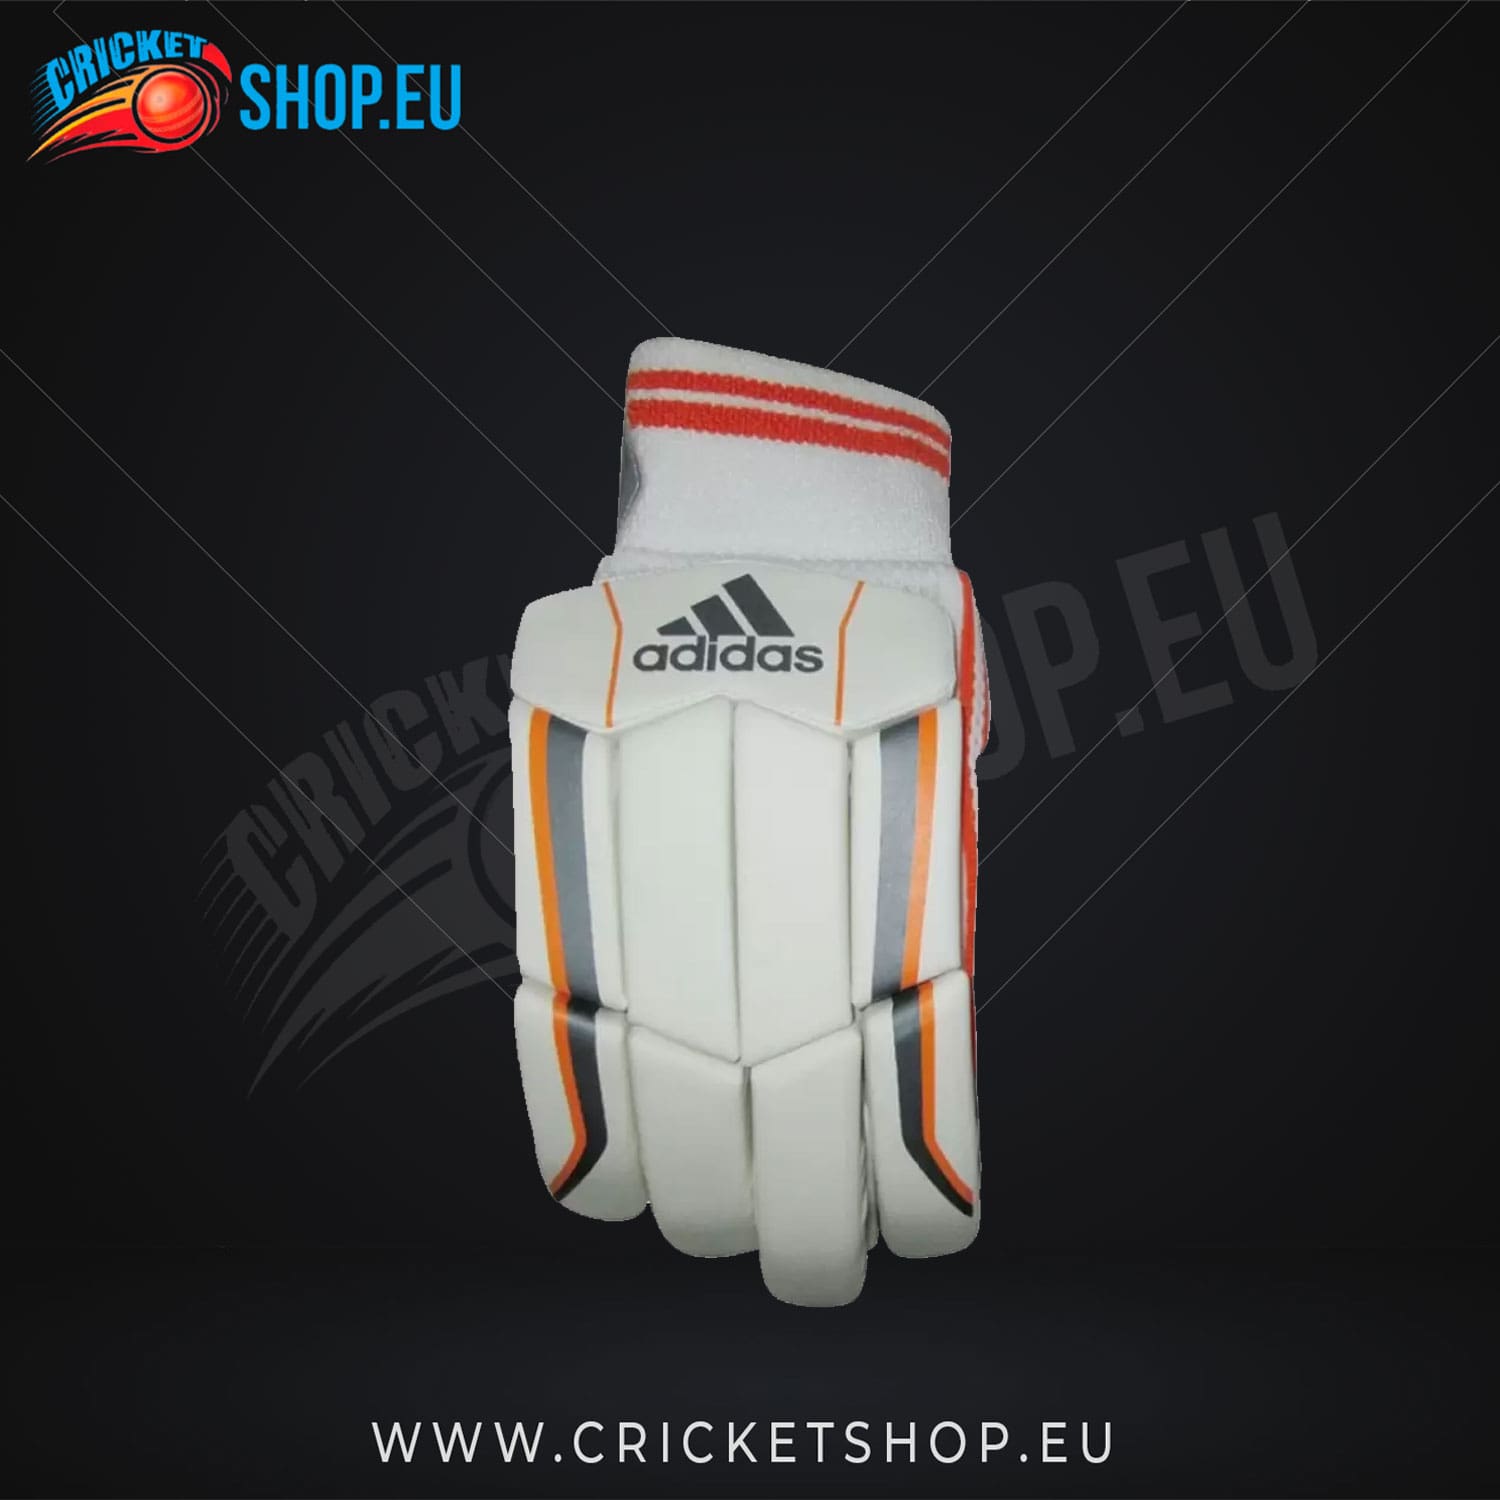 Adidas Pellara 4.0 Cricket Batting Gloves